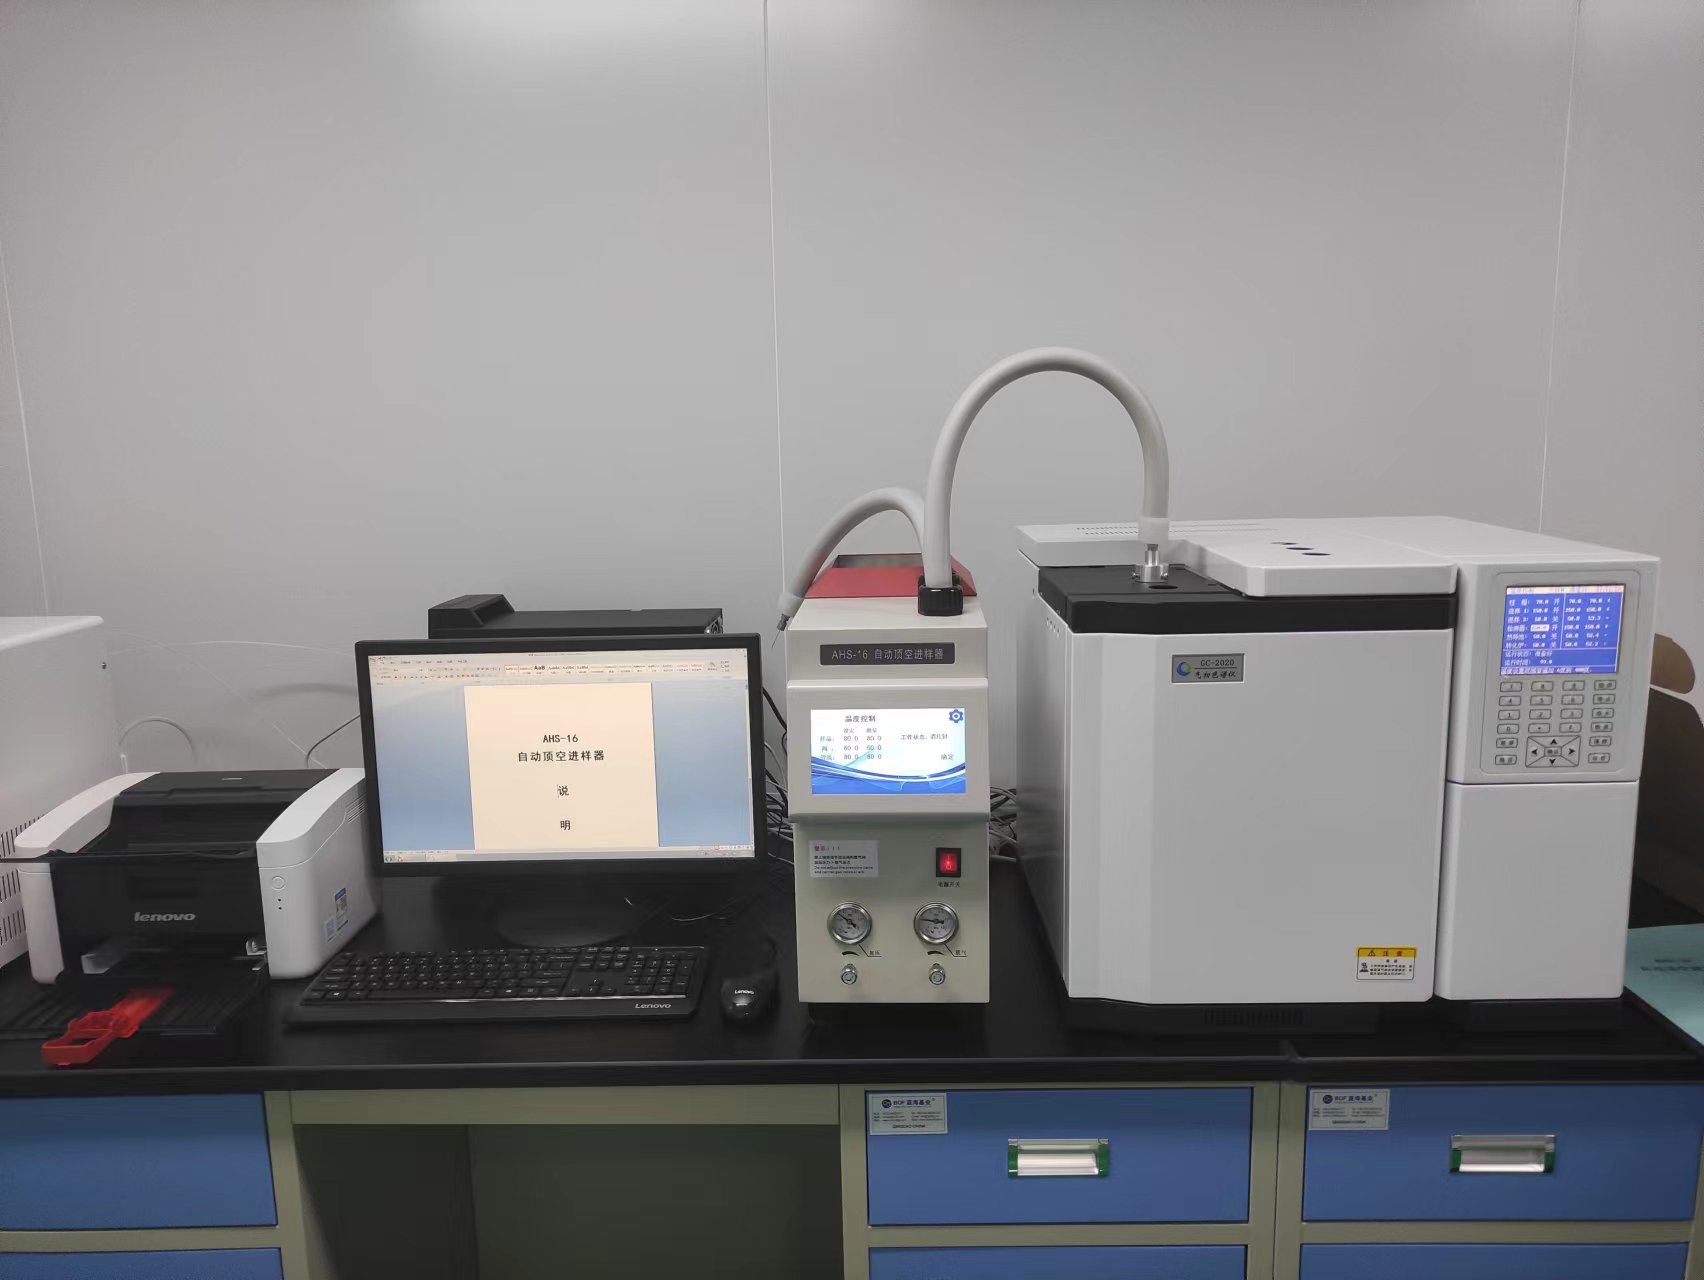 防护服安全保障---环氧乙烷残留检测气相色谱仪在青岛信义元安装调试完成